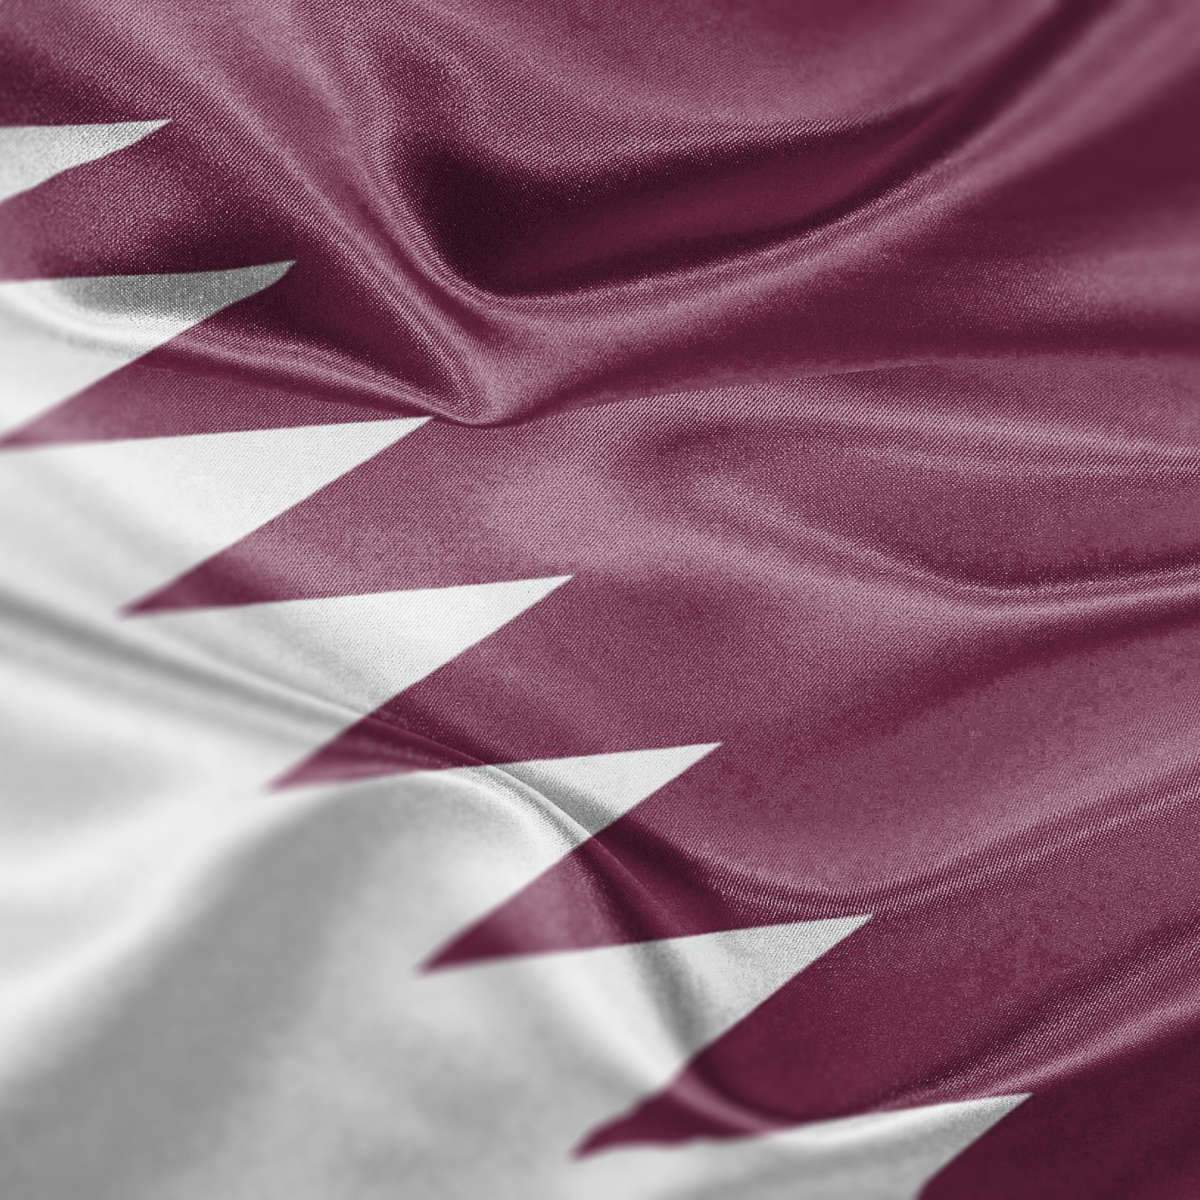 Qatar Flags